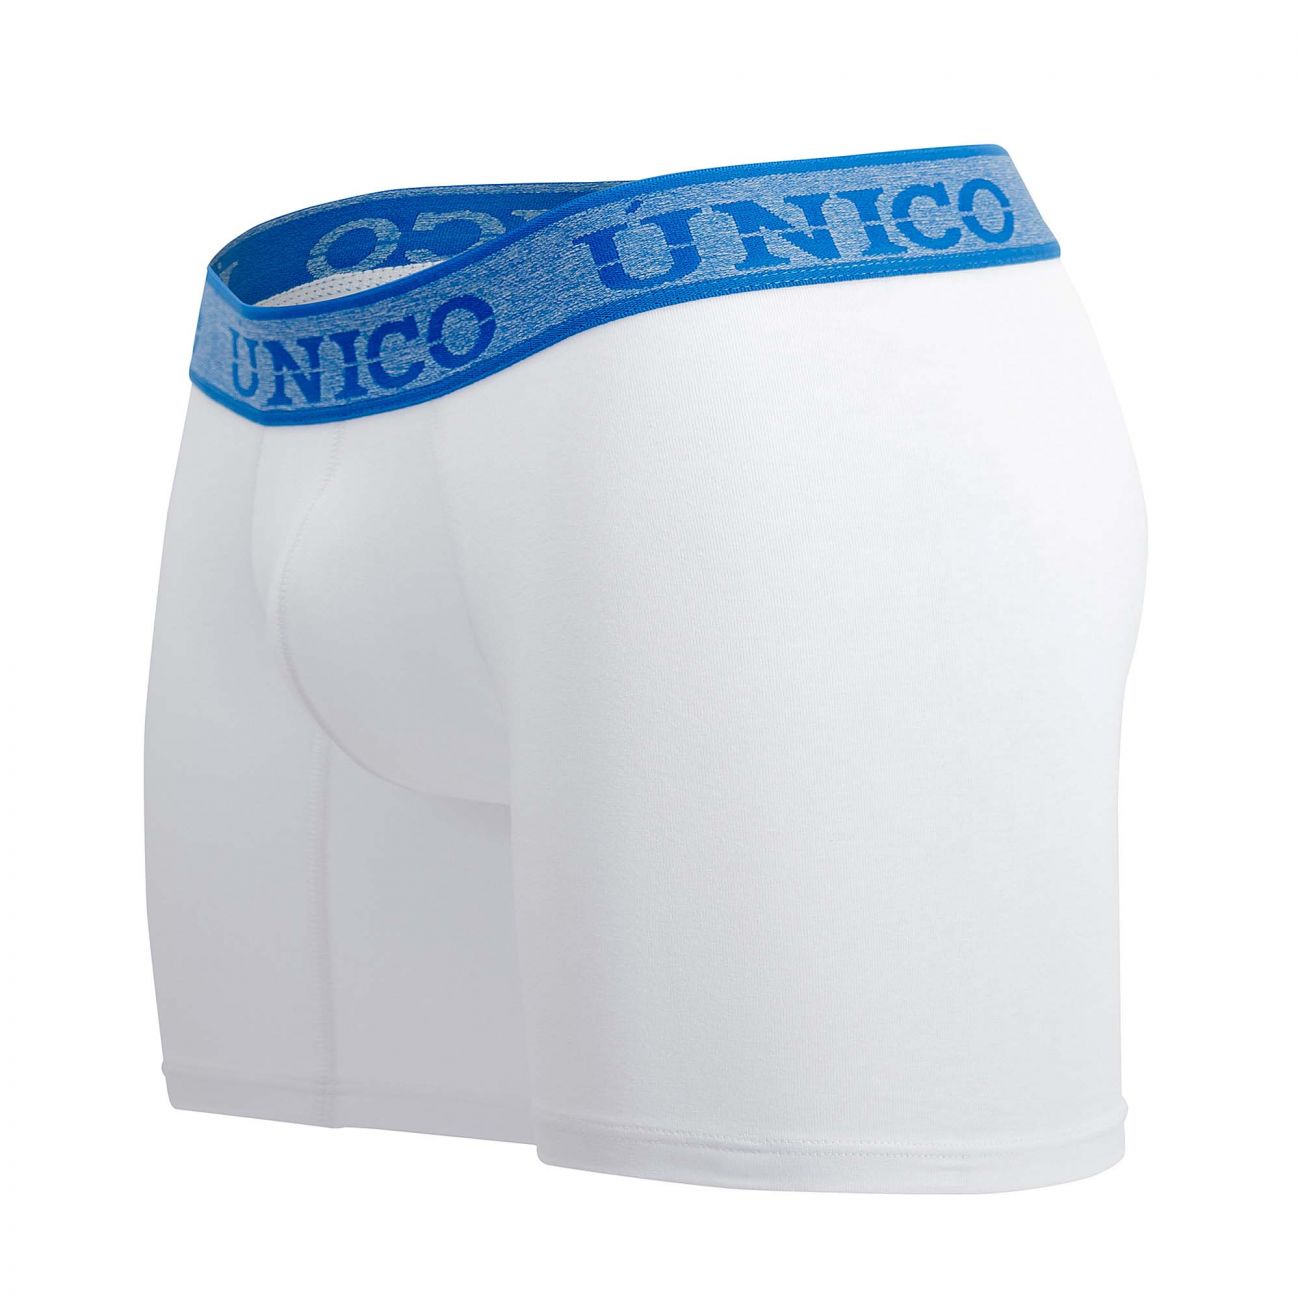 Unico 20160100202 Enchanted Boxer Briefs White